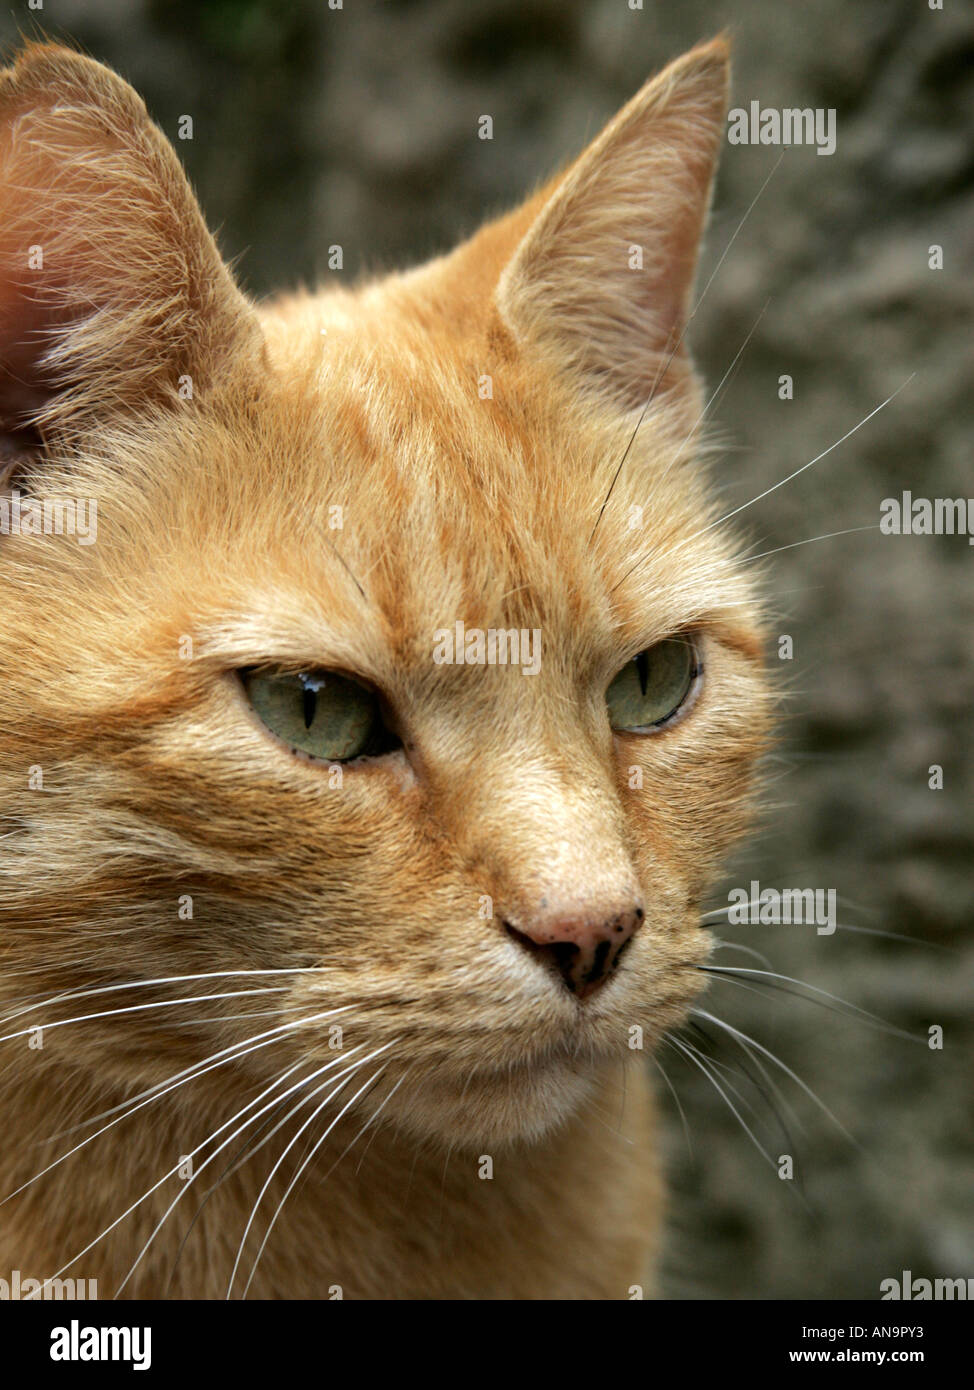 Ginger tabby cat. Stock Photo